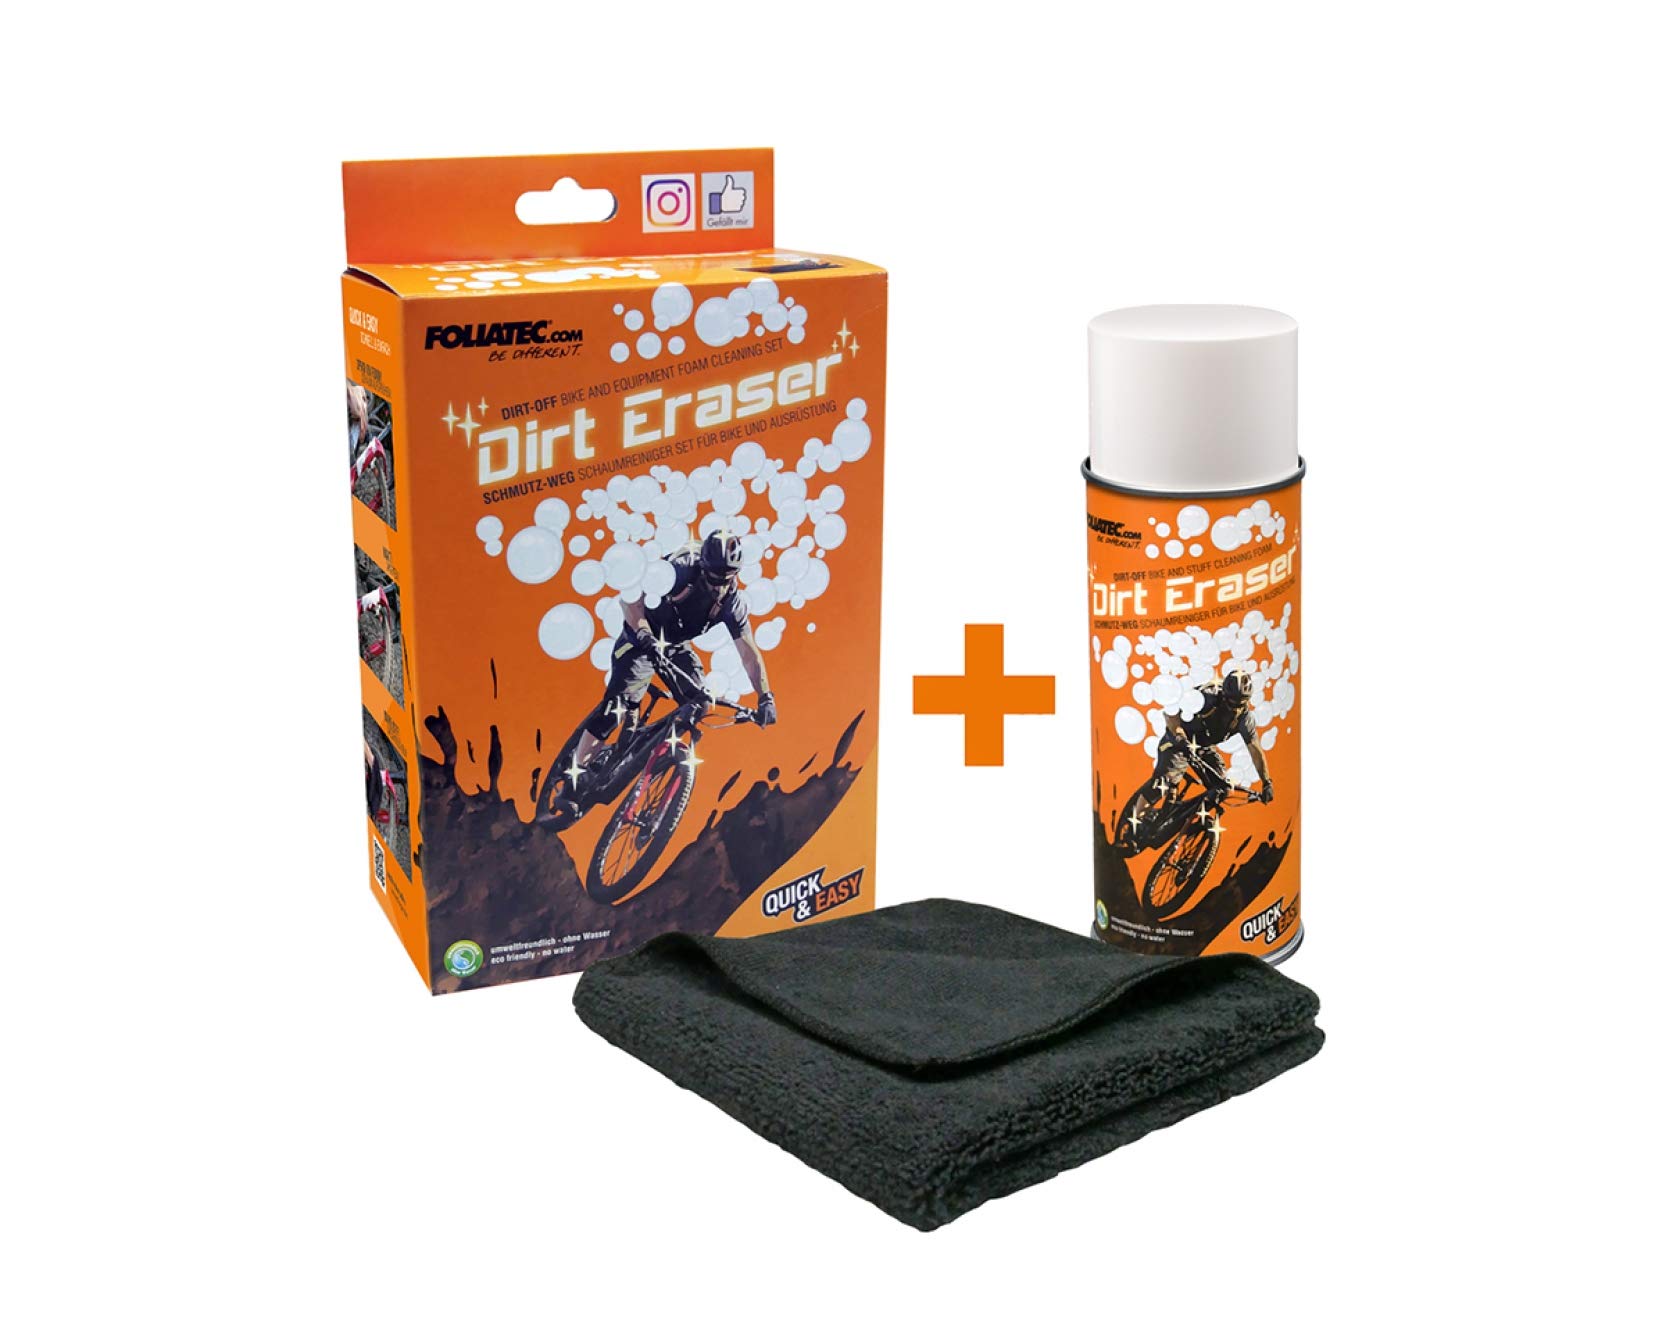 FOLIATEC Dirt Eraser Fahrrad Bike Reiniger, Schmutz-Weg Schaumreiniger Set, 400 ml von Foliatec